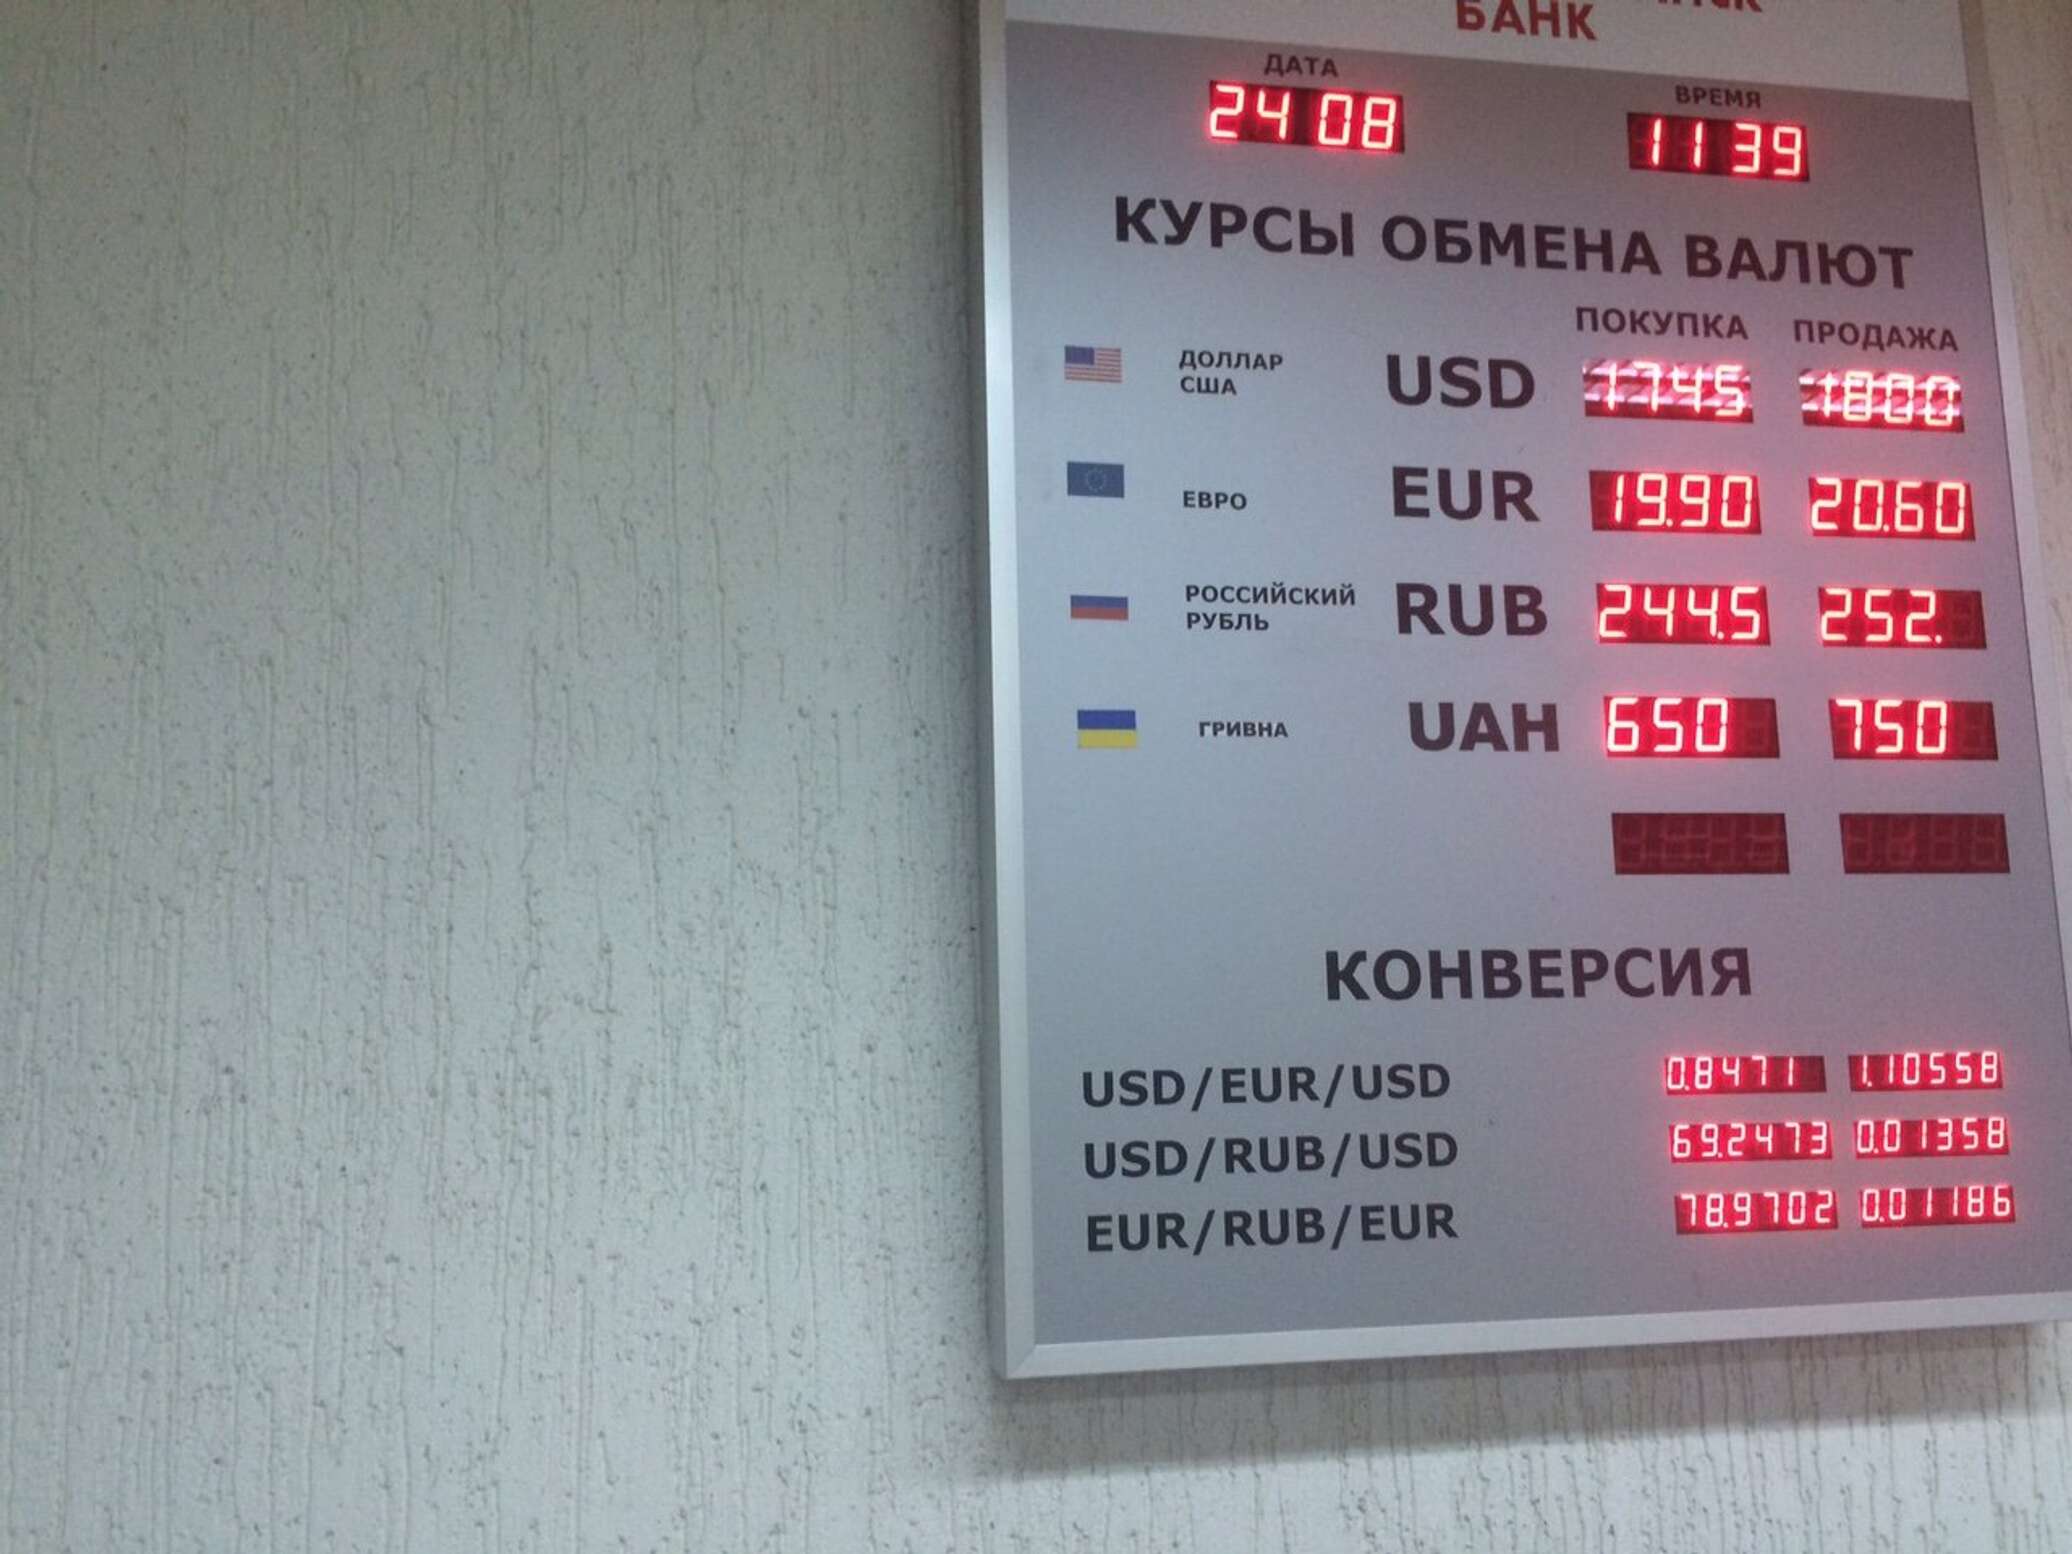 Белорусские банки валюта. Купля продажа валюты. Курсы валют в рублях. Курс валют Нацбанка. Курсы валюты Нацбанка Беларусь.